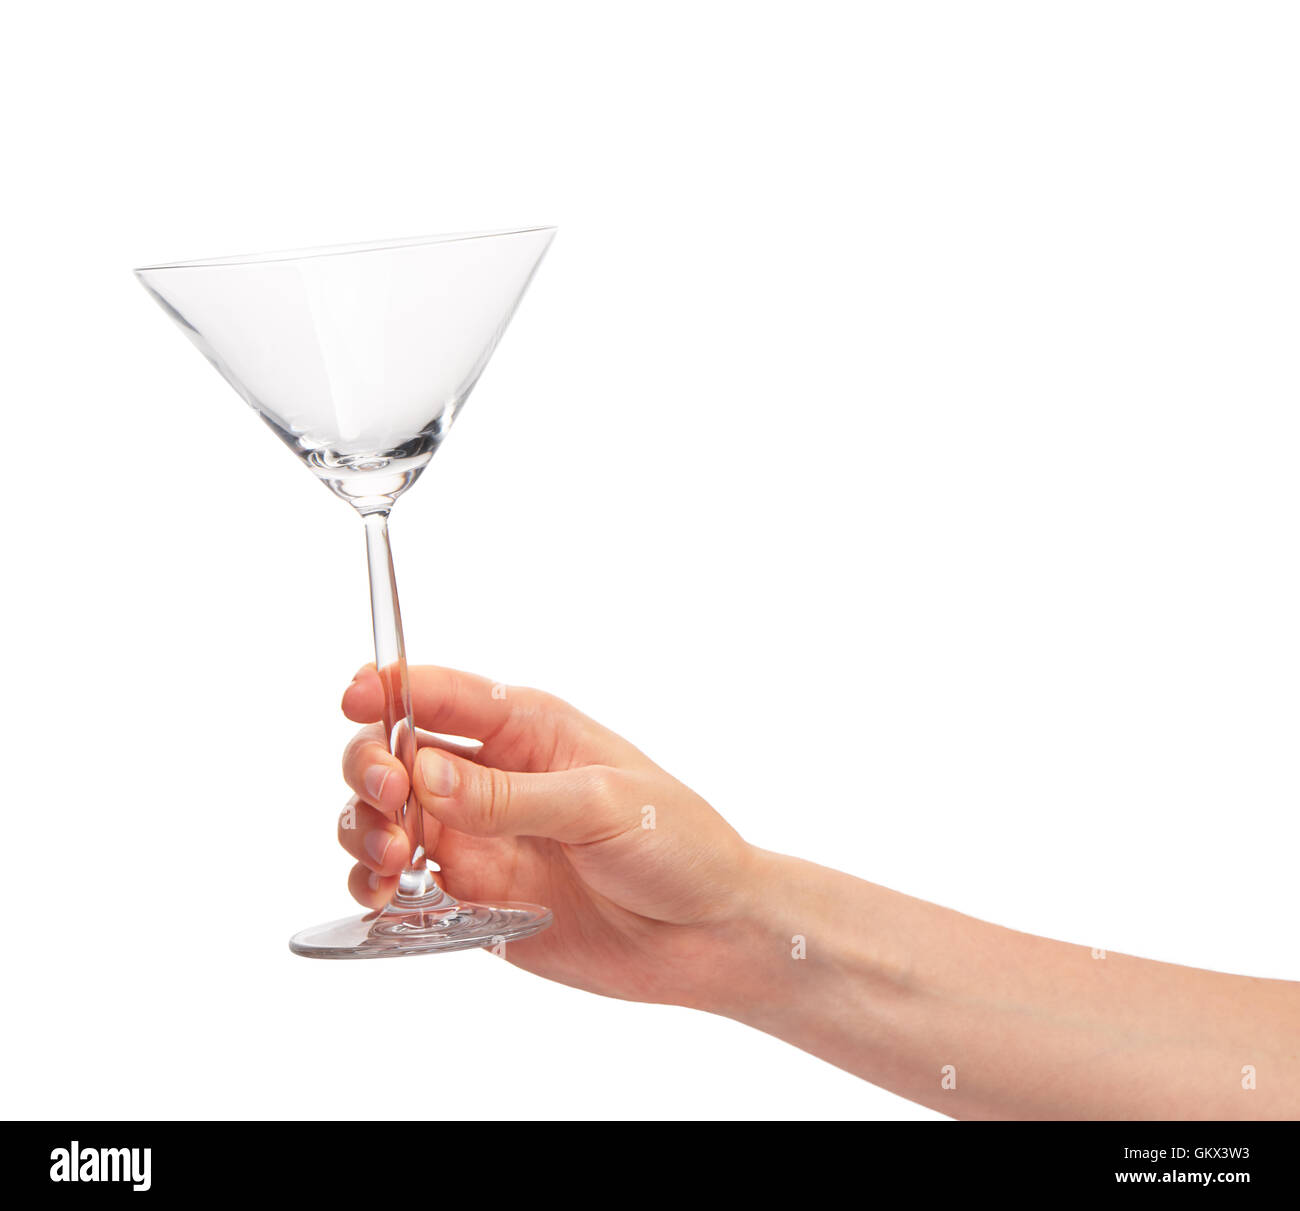 Cerca de mano femenina sosteniendo vacía copa de martini transparente limpio contra el fondo blanco. Foto de stock